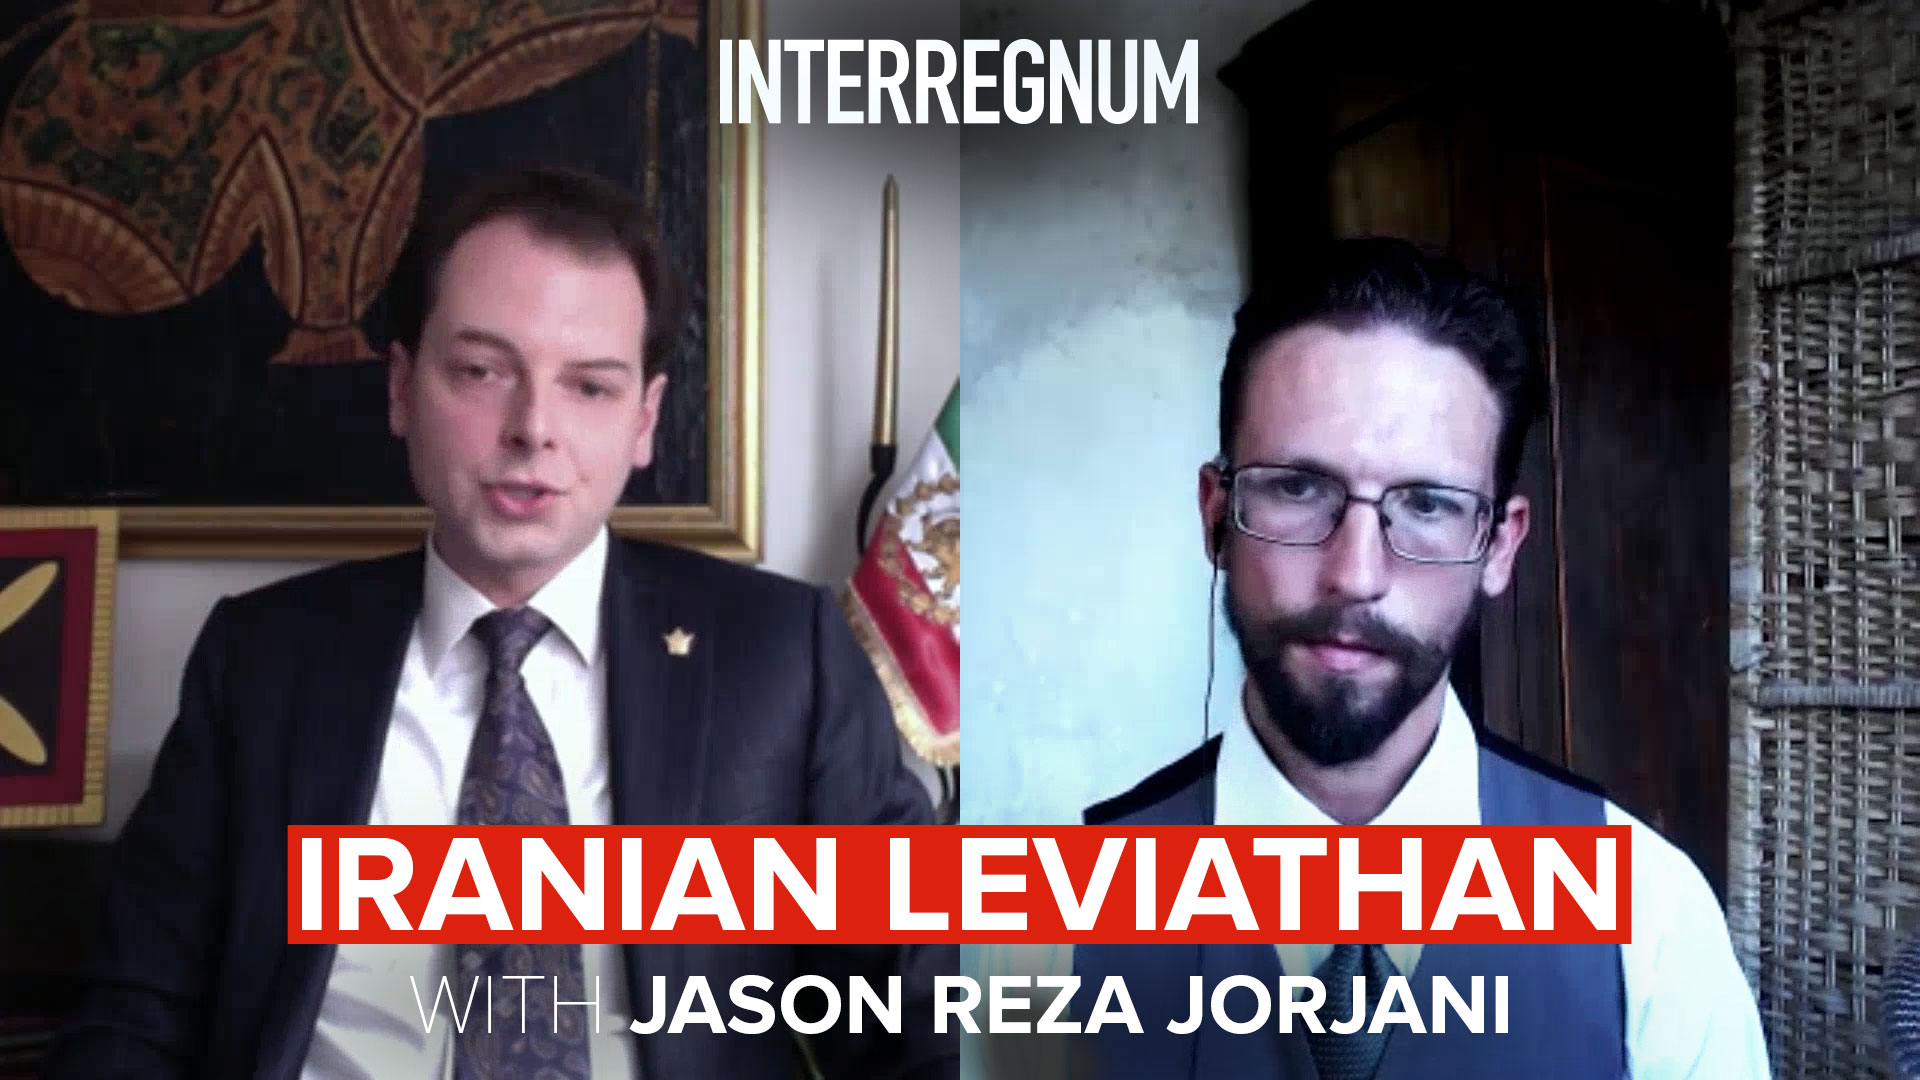 Iranian Leviathan with Jason Reza Jorjani